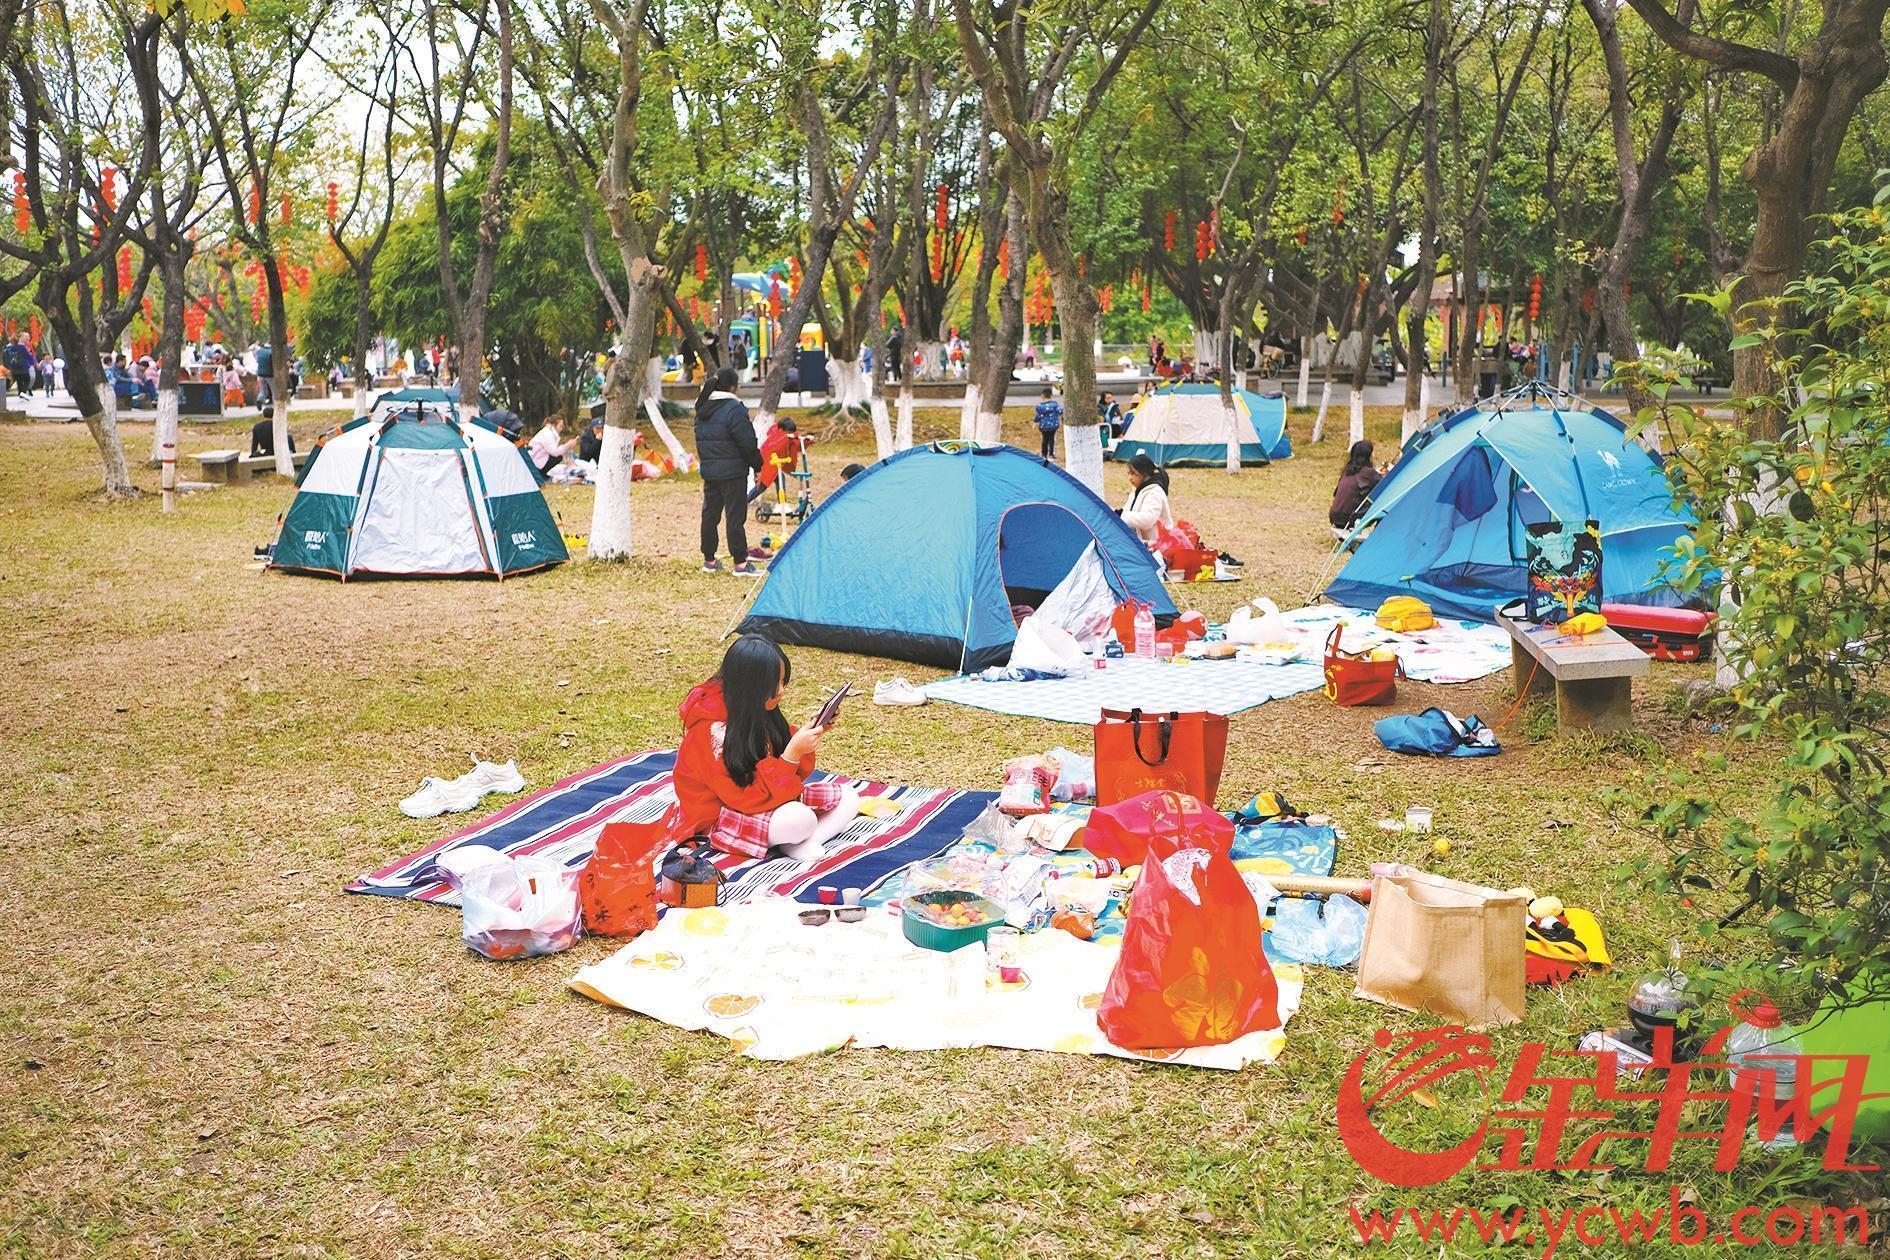 八部门:鼓励开放郊野公园提供露营，满足群众露营需求